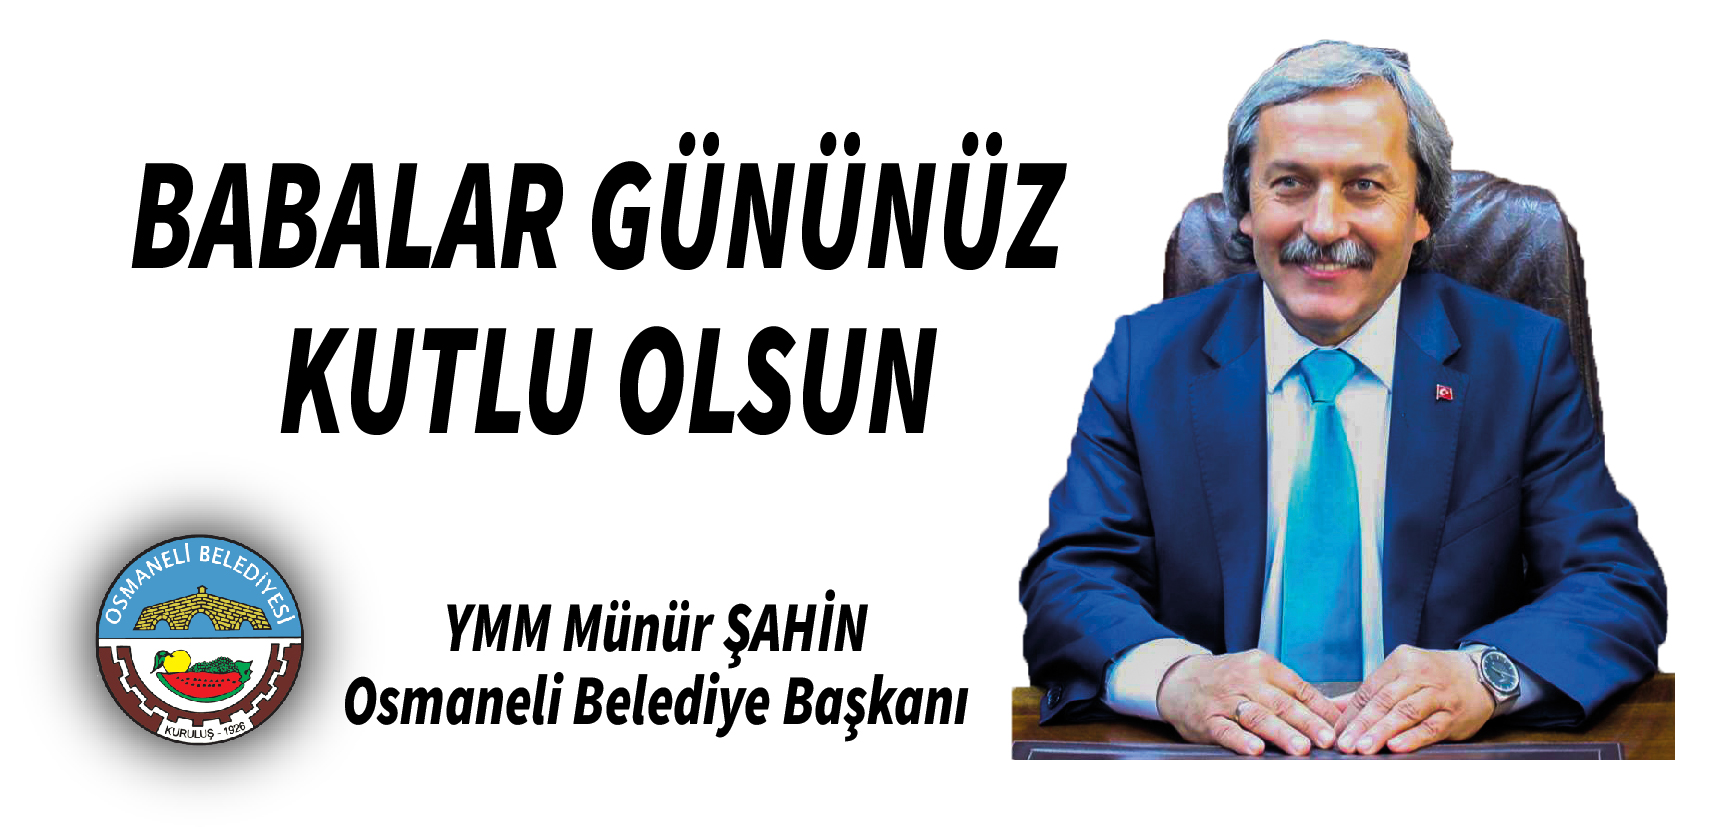 Osmaneli Belediye Başkanı Münür Şahin - Babalar Günü Kutlama İlanı